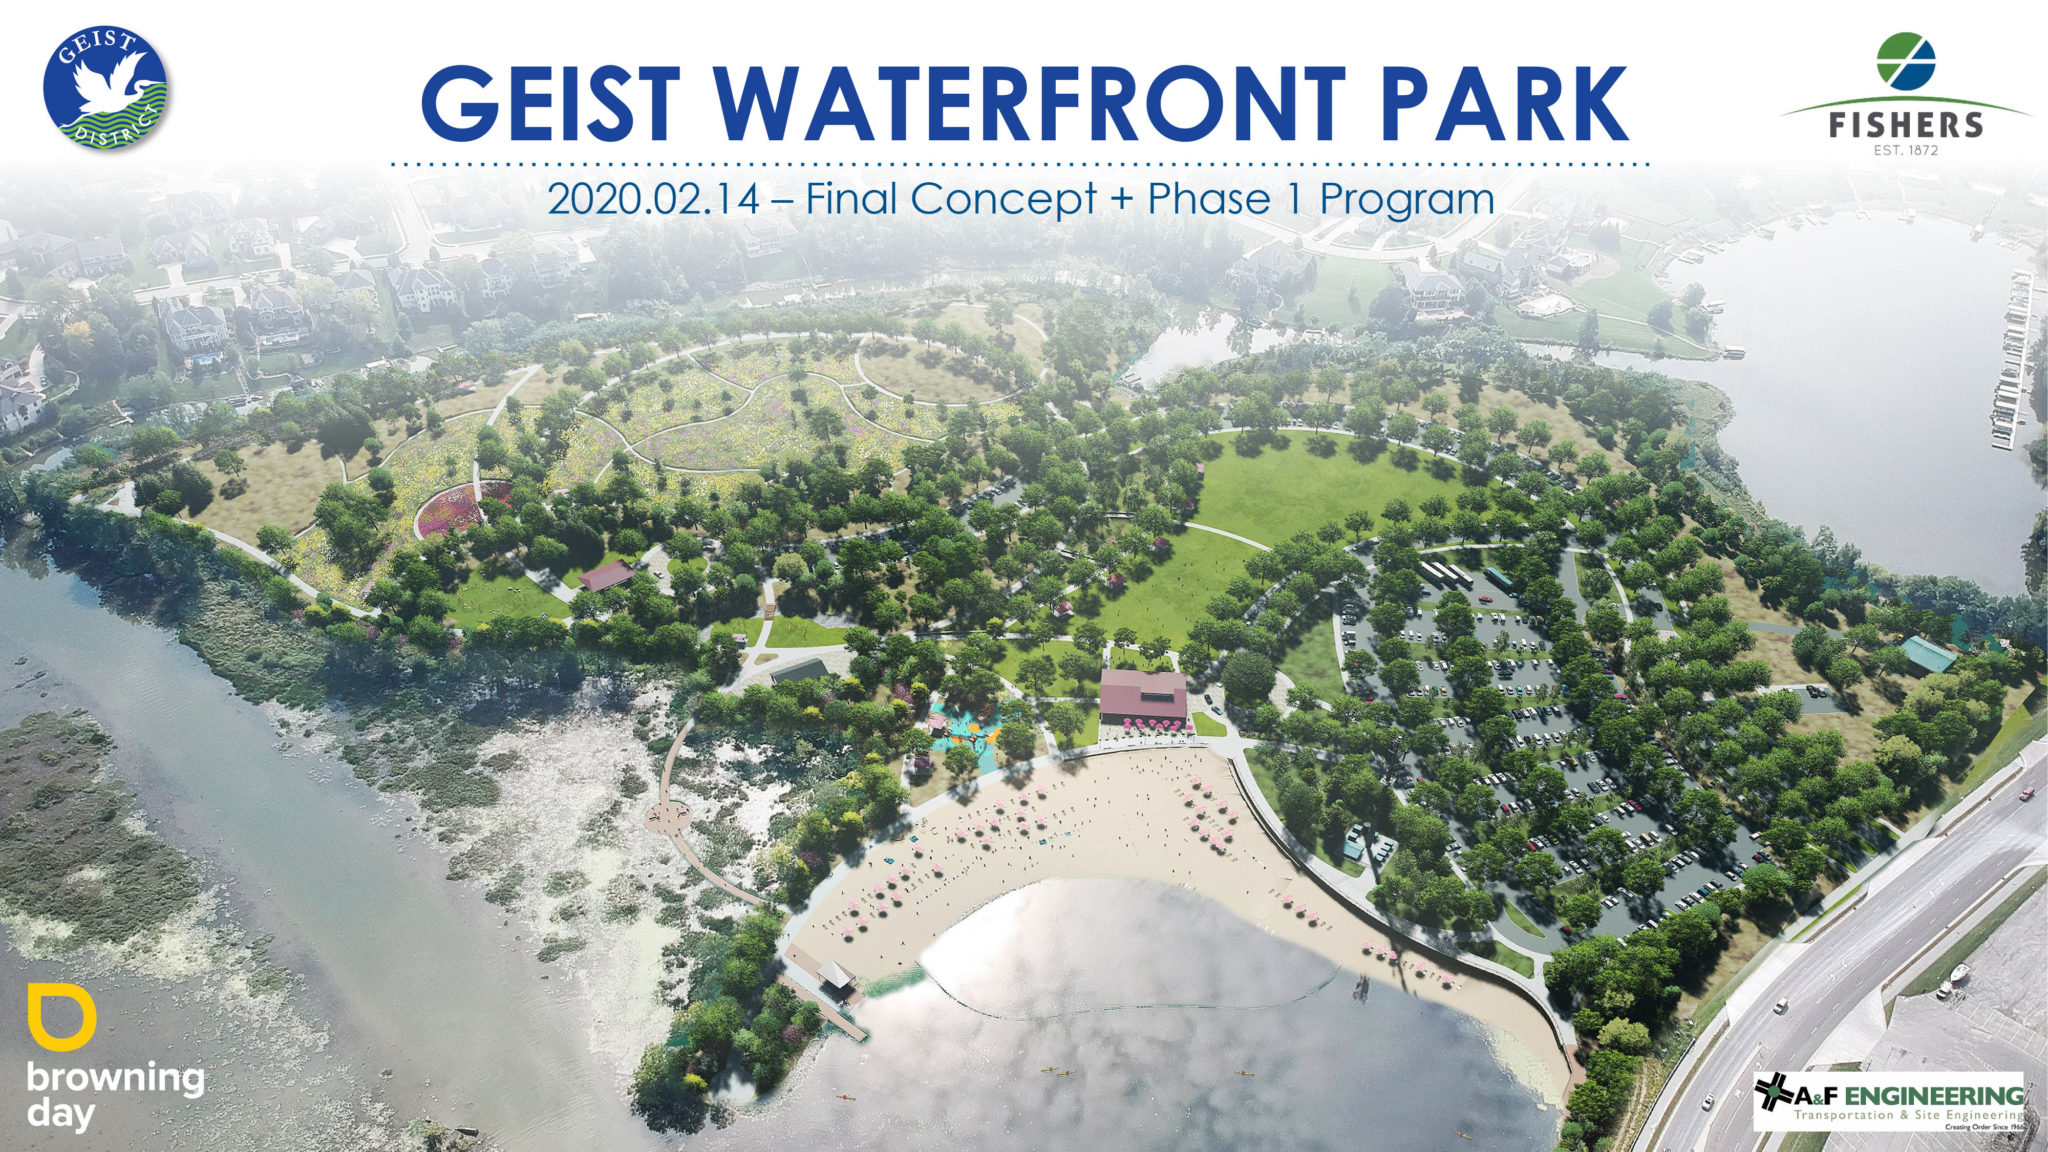 Geist Waterfront Park